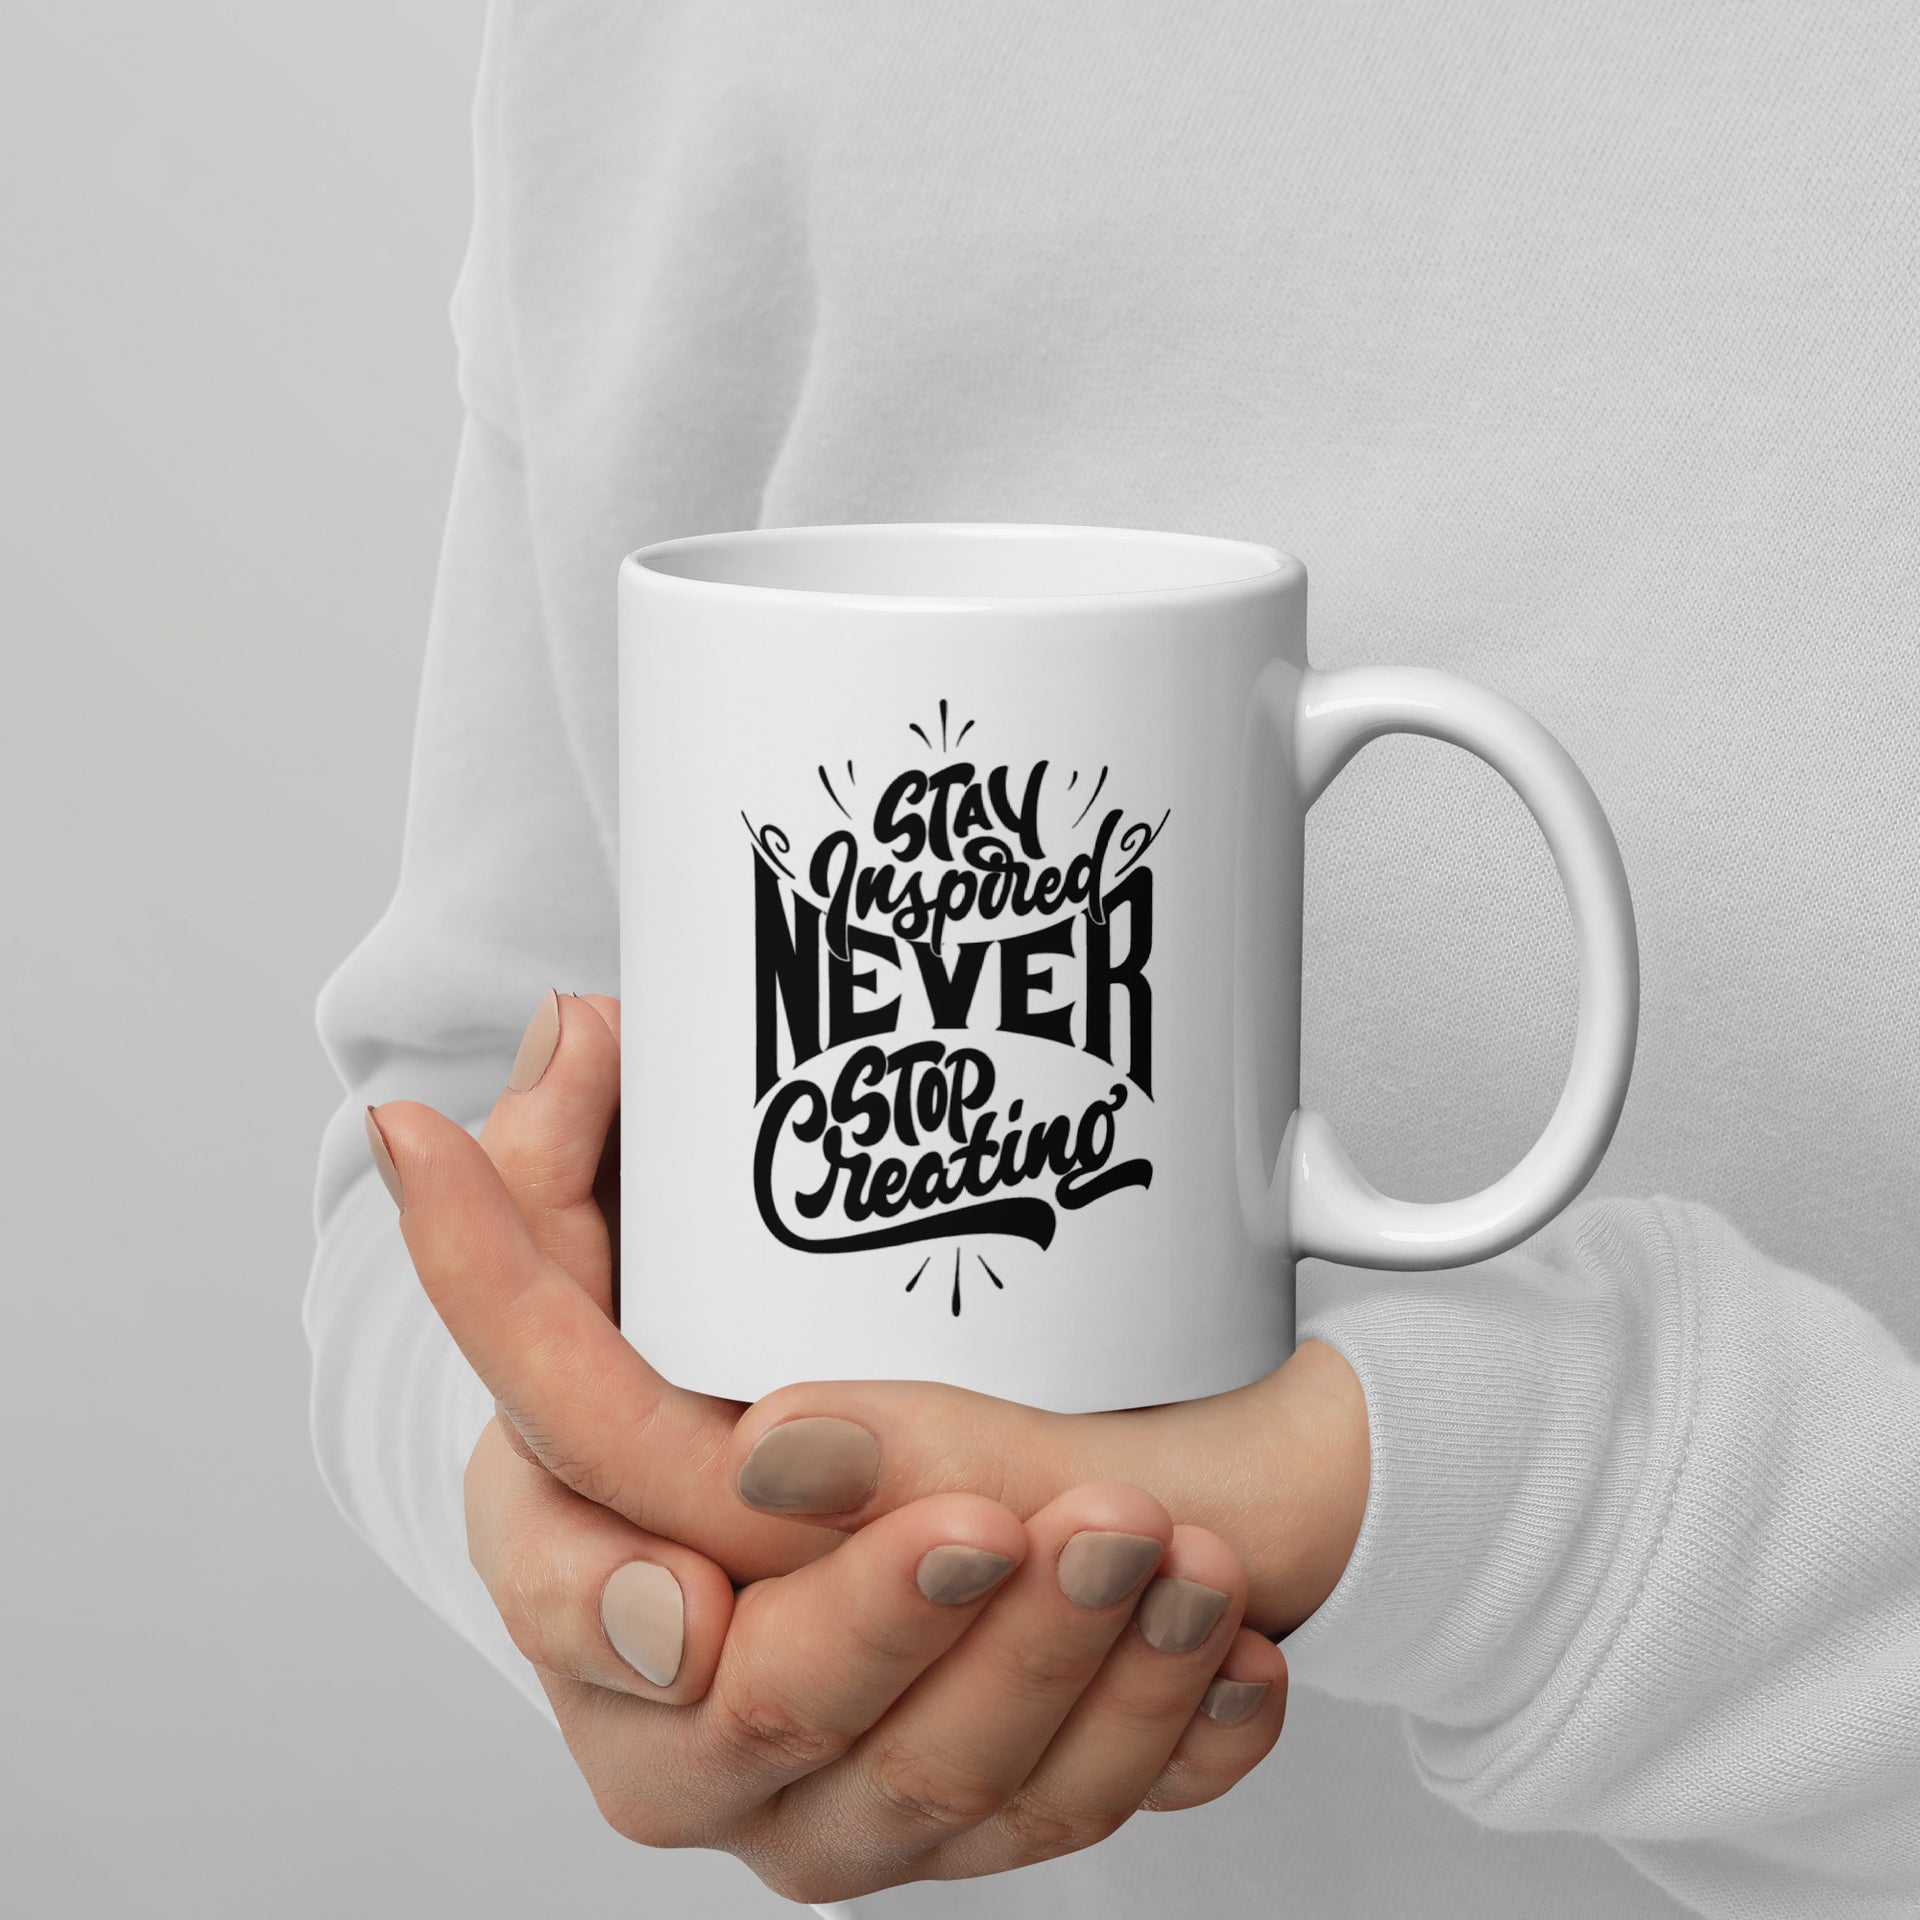 Never Stop Creating - Coffee Mug